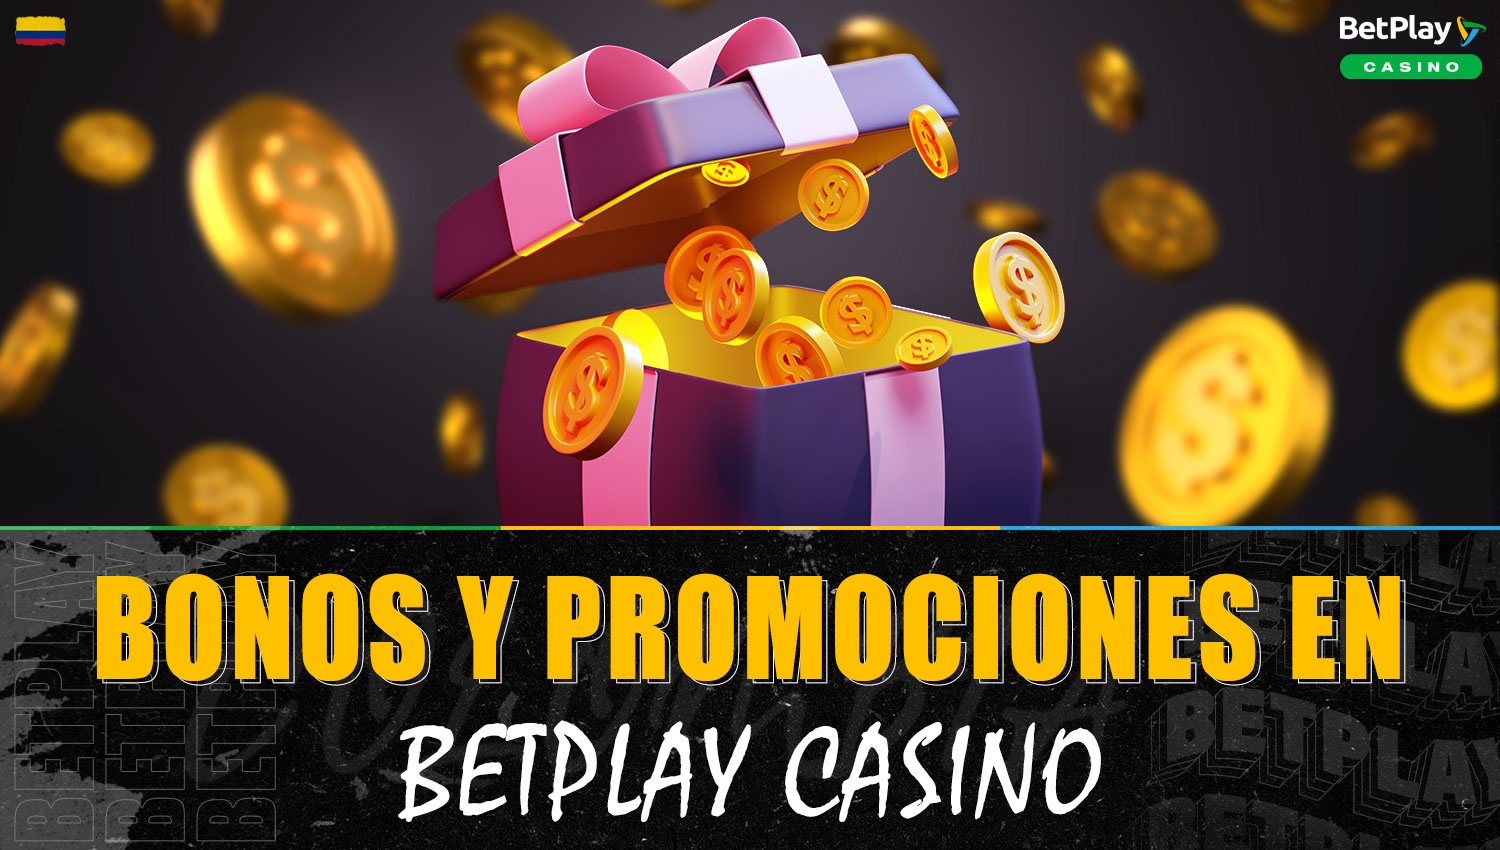 Información detallada sobre bonos y promociones de casino en la plataforma Betplay Colombia